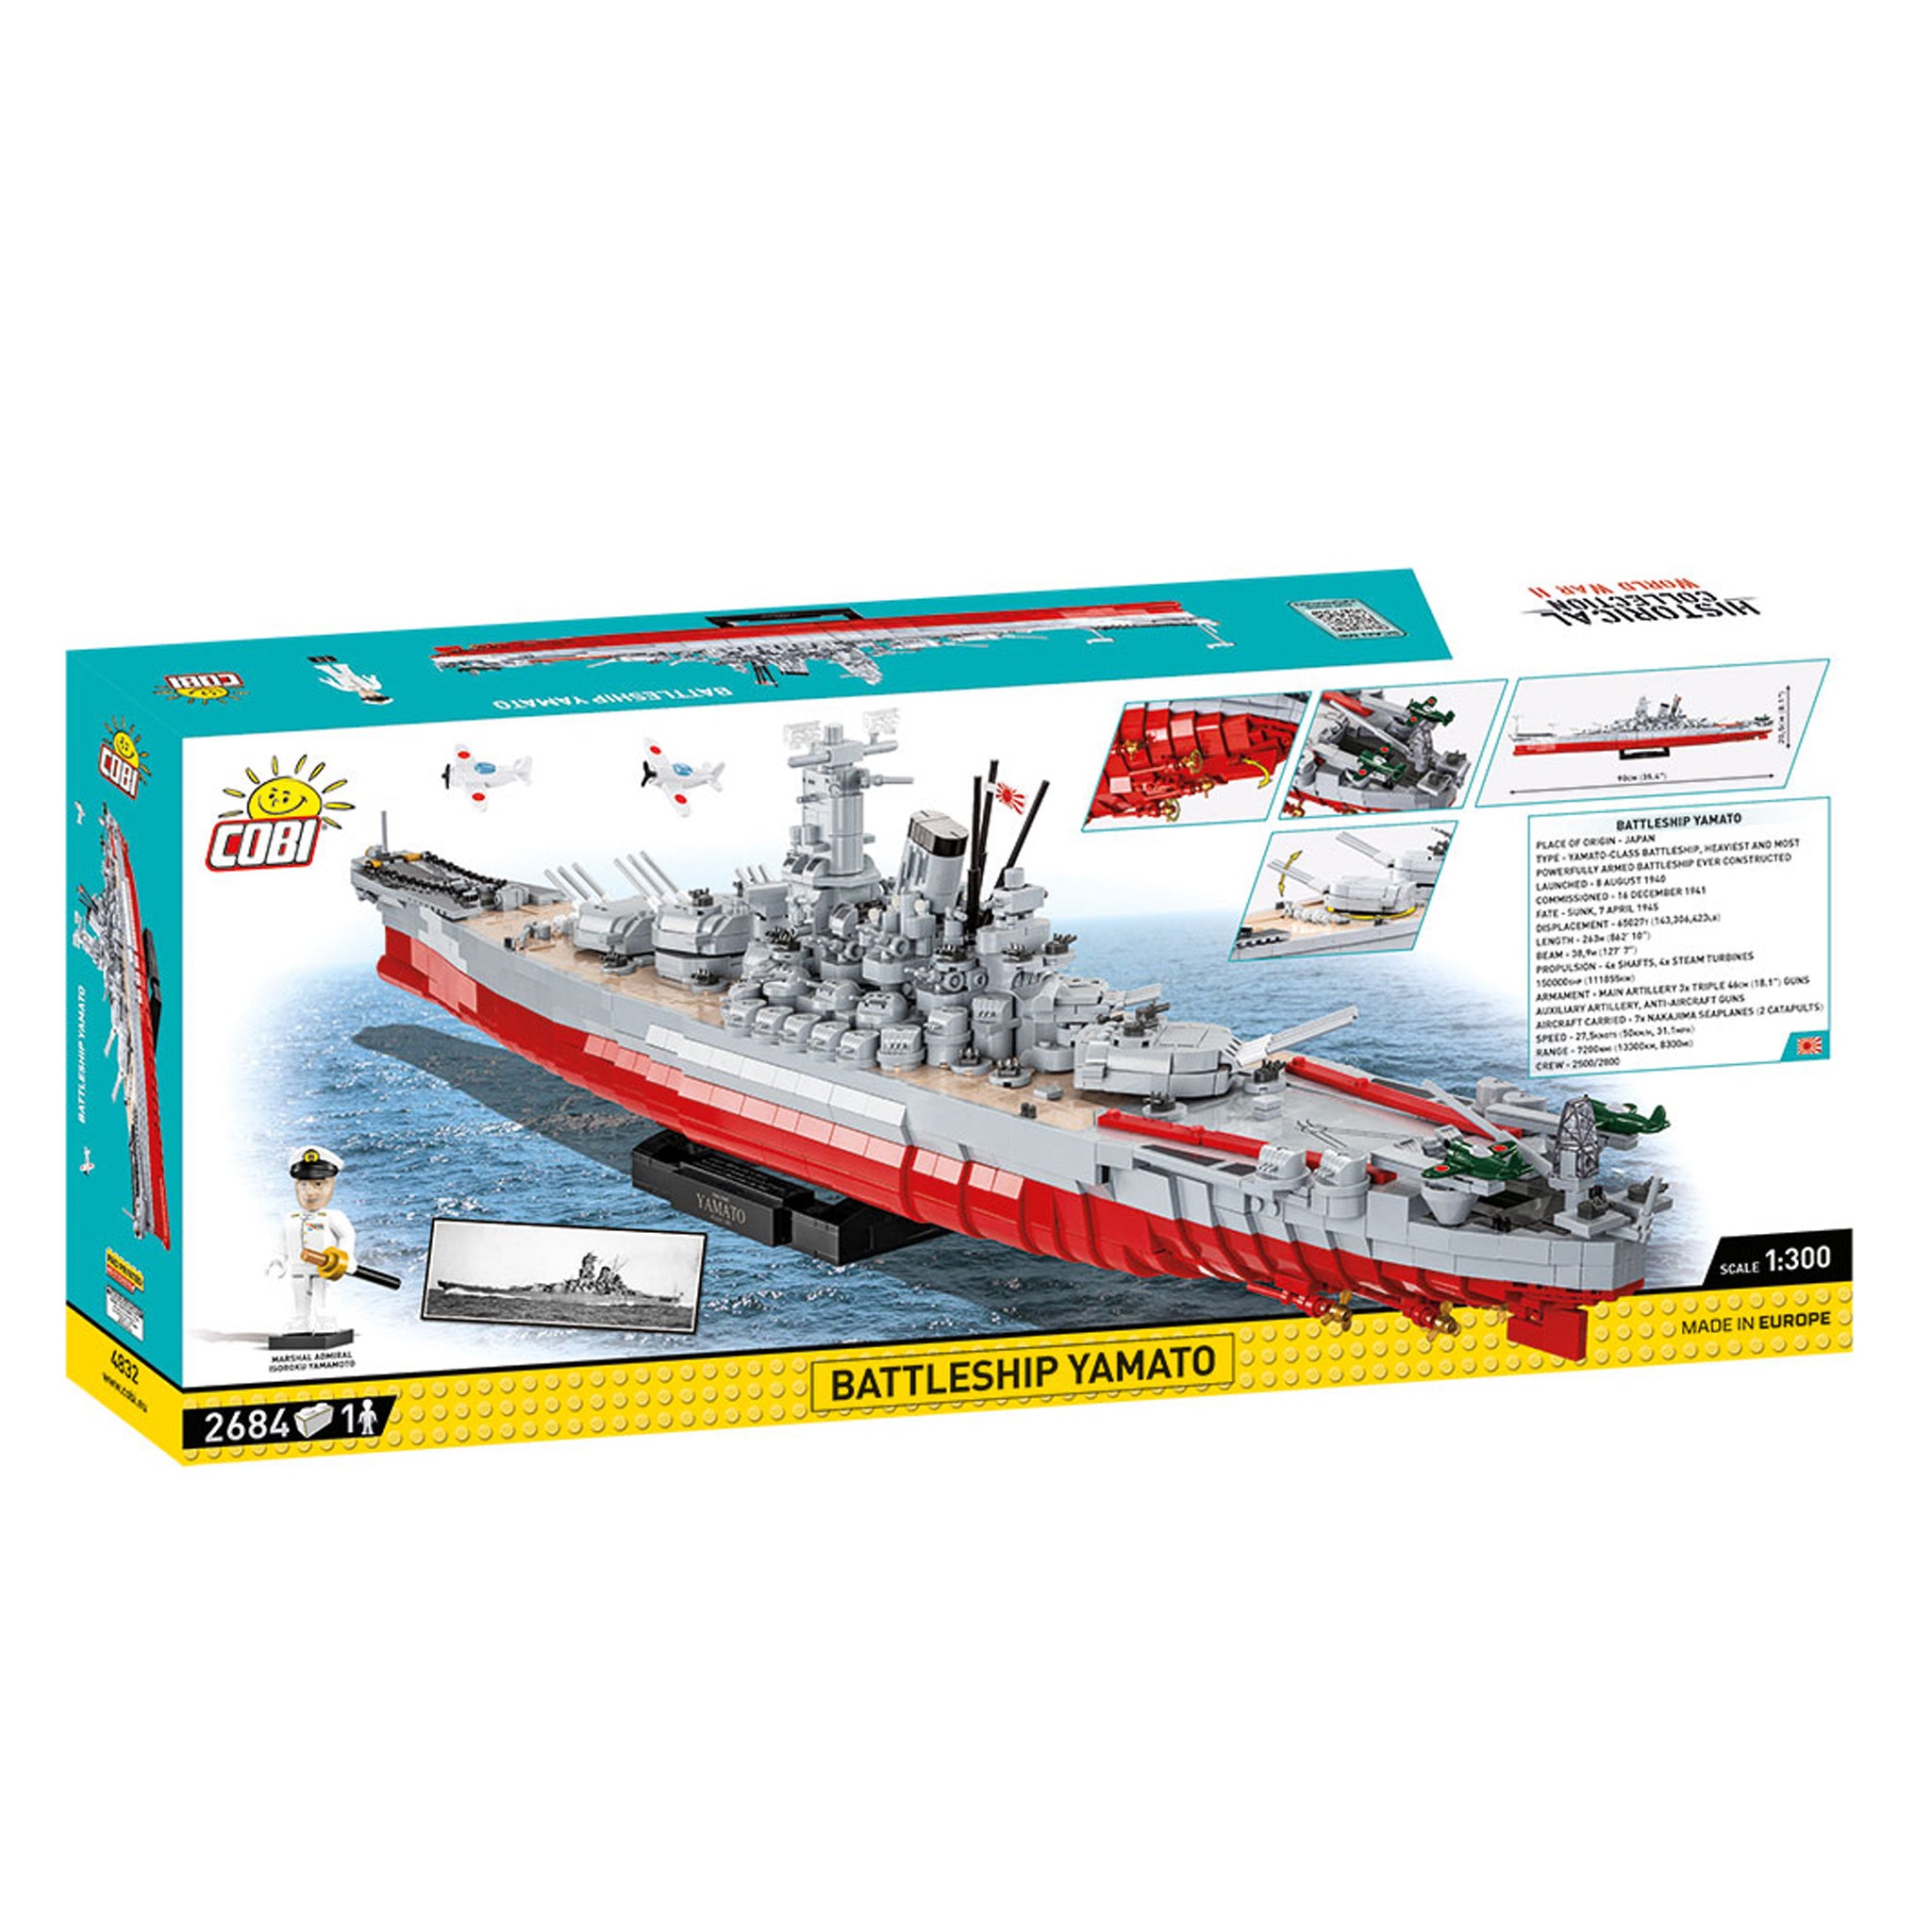 4832 - Battleship Yamato Executive Edition (Cobi)